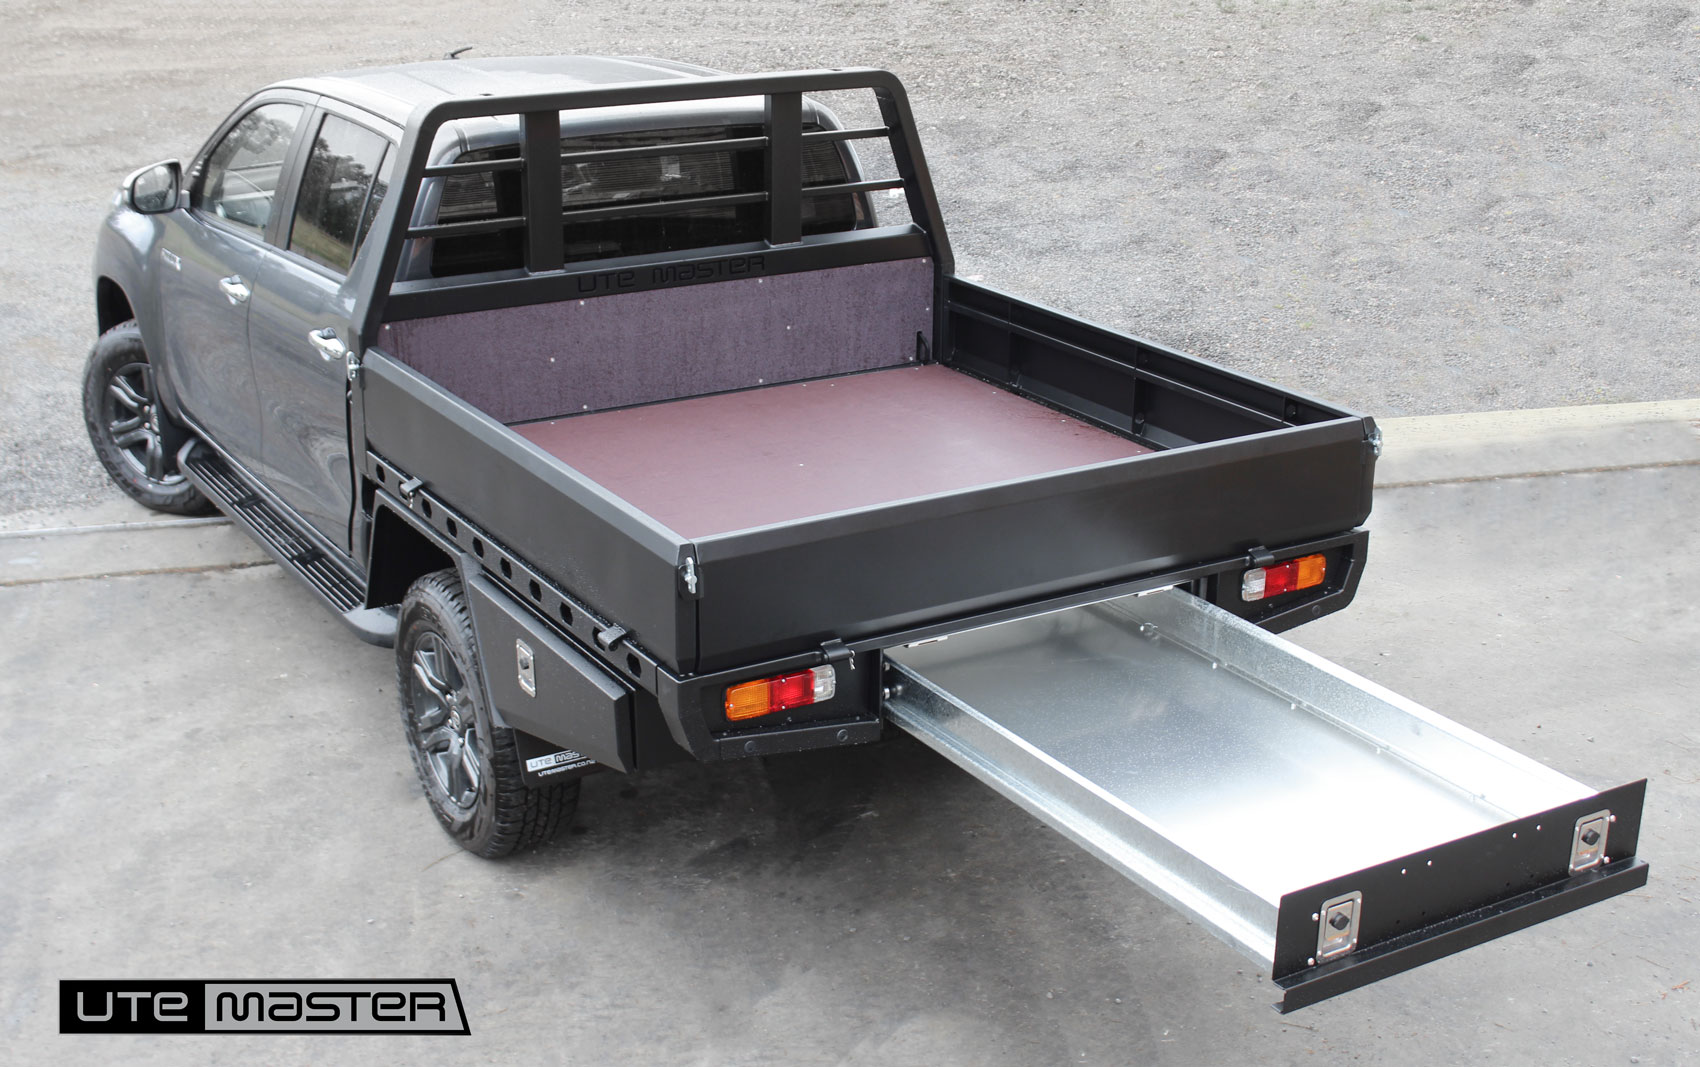 Utemaster Steel Flat Deck to suit Toyota Hilux Underbody Drawer Storage